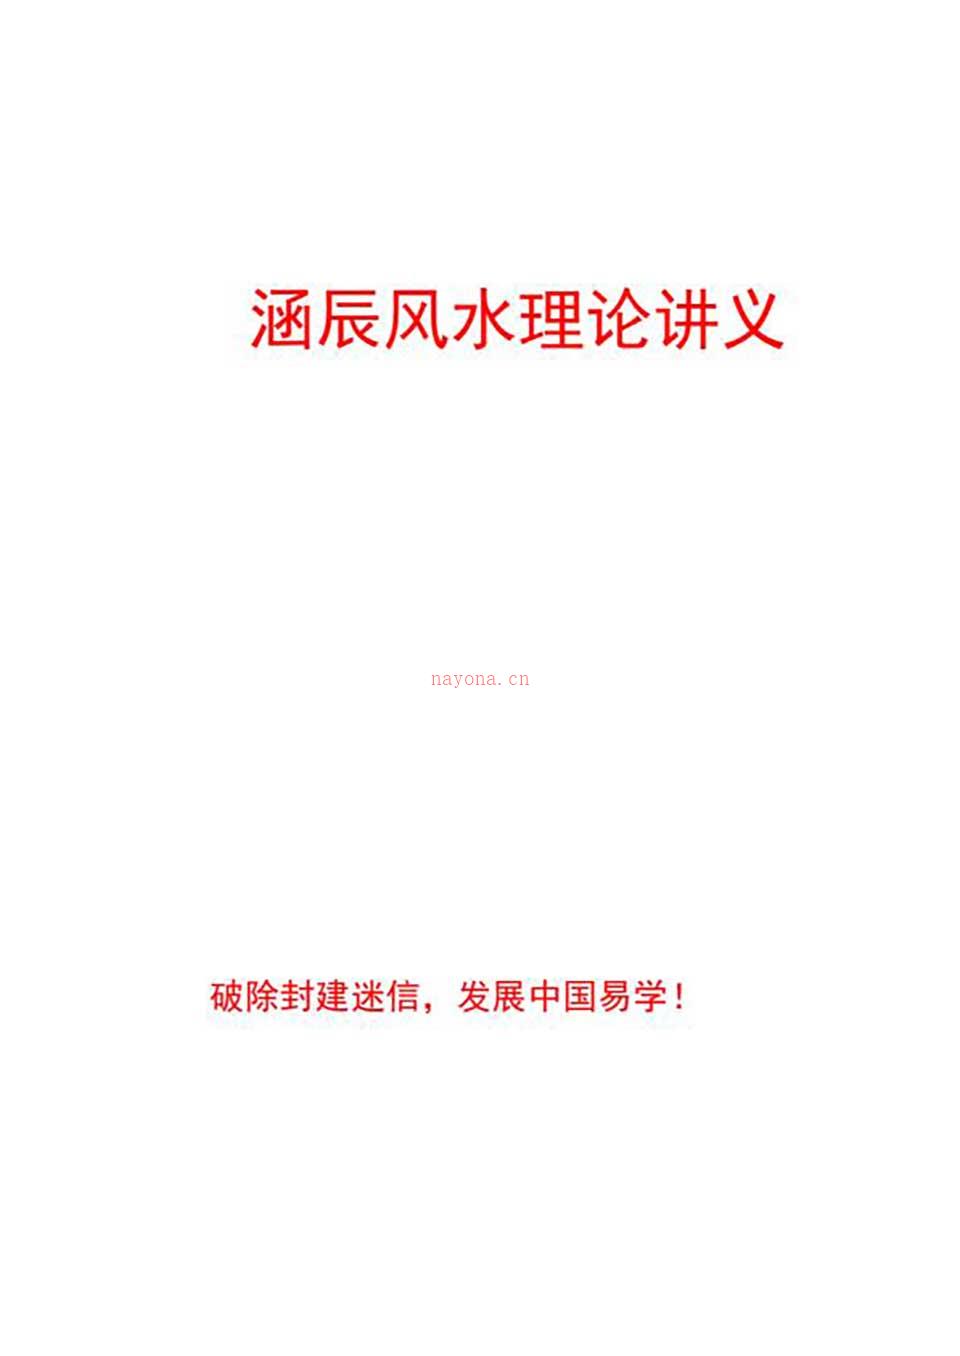 李涵辰-风水班理论讲义大纲【经典】44页.pdf 百度网盘资源